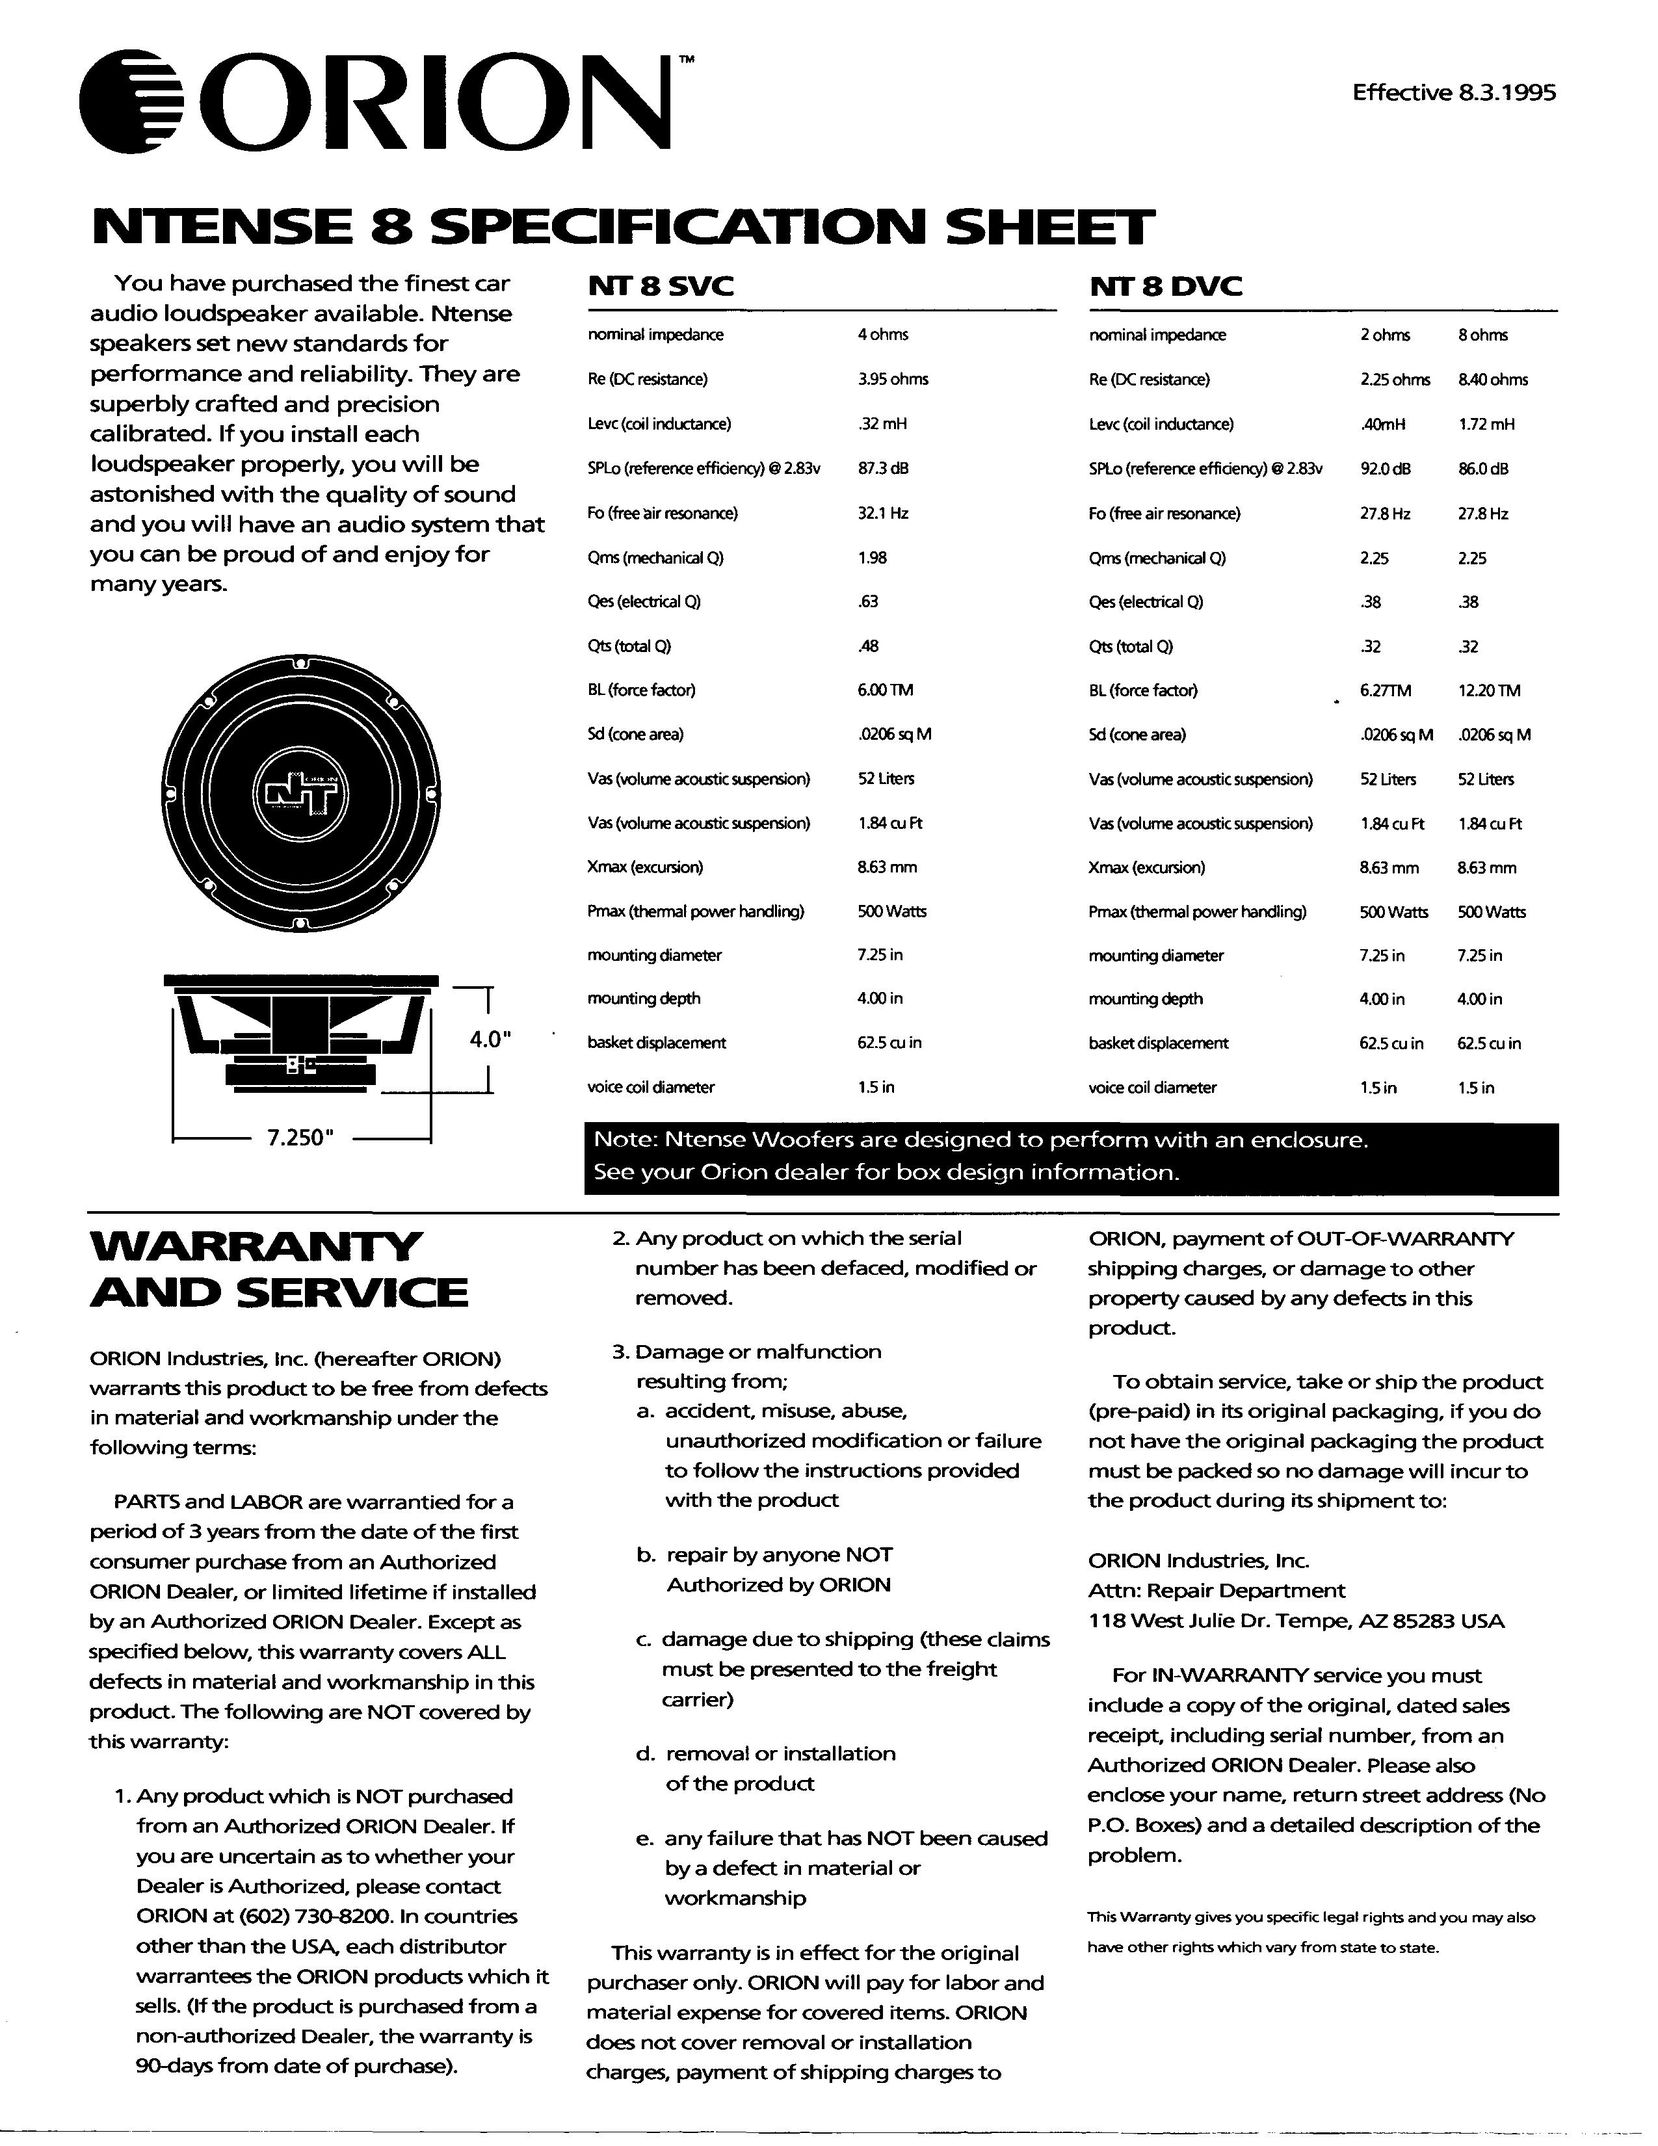 Orion Car Audio NT8 DVC Portable Speaker User Manual